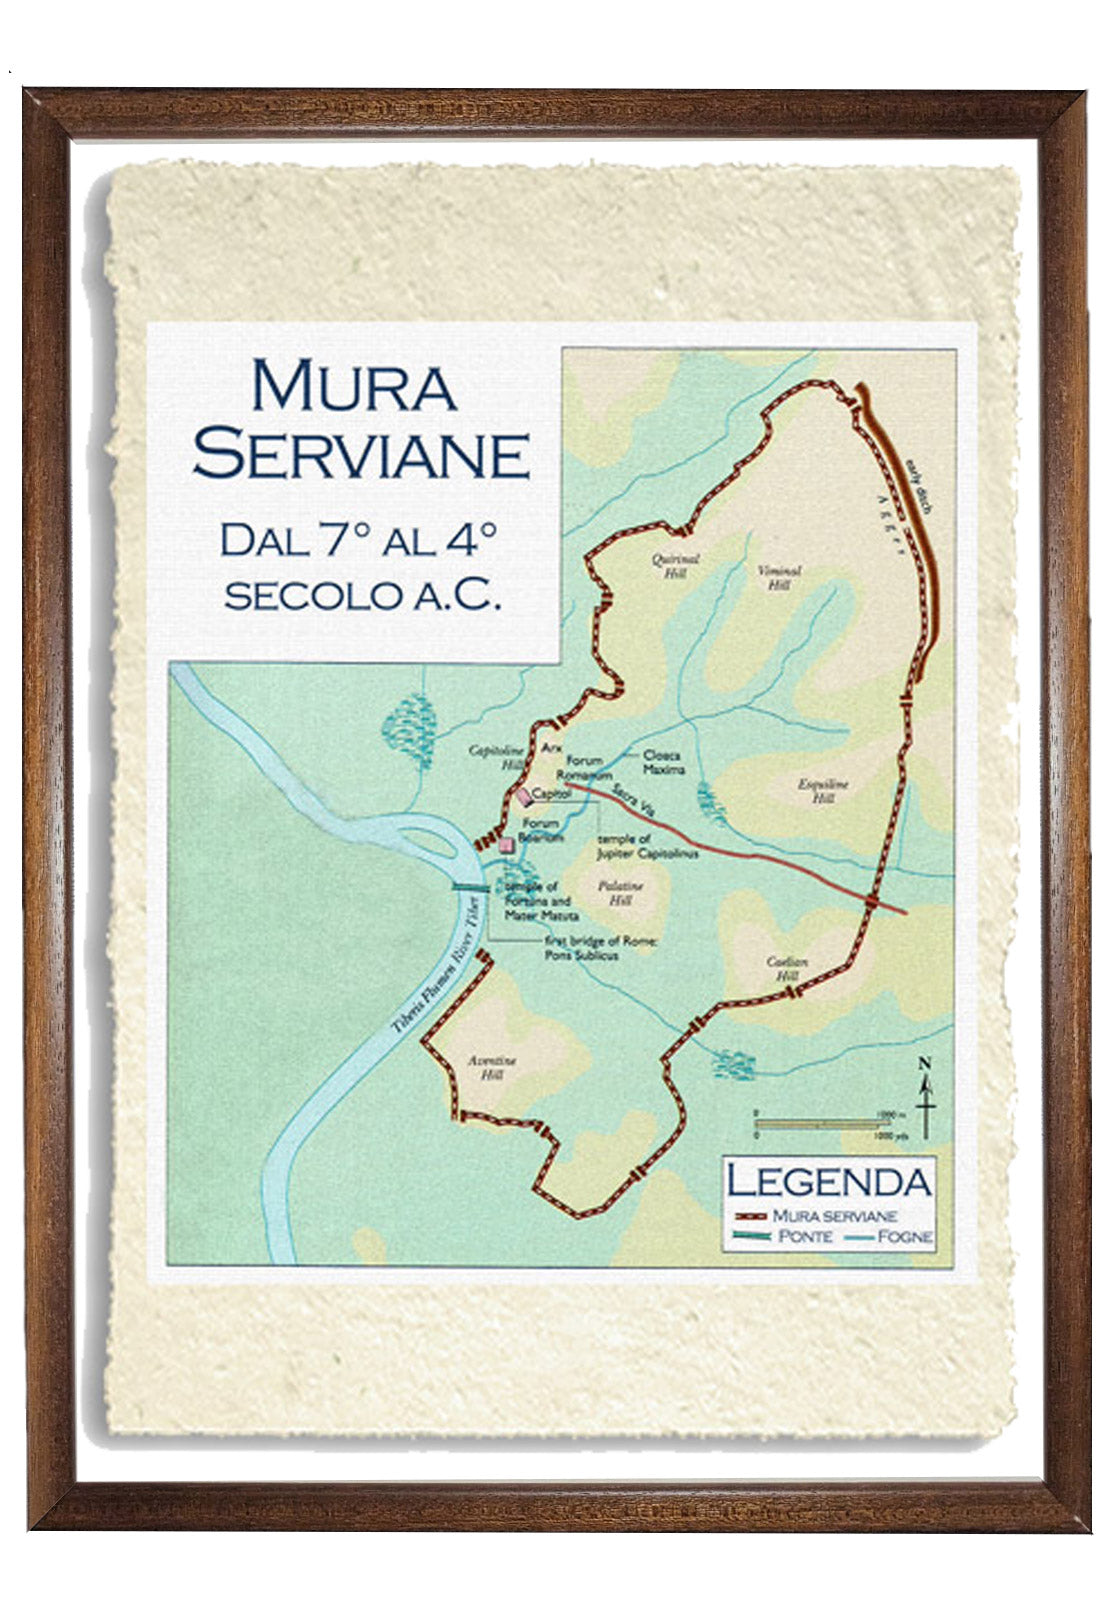 Le mura serviane - Mappa storica